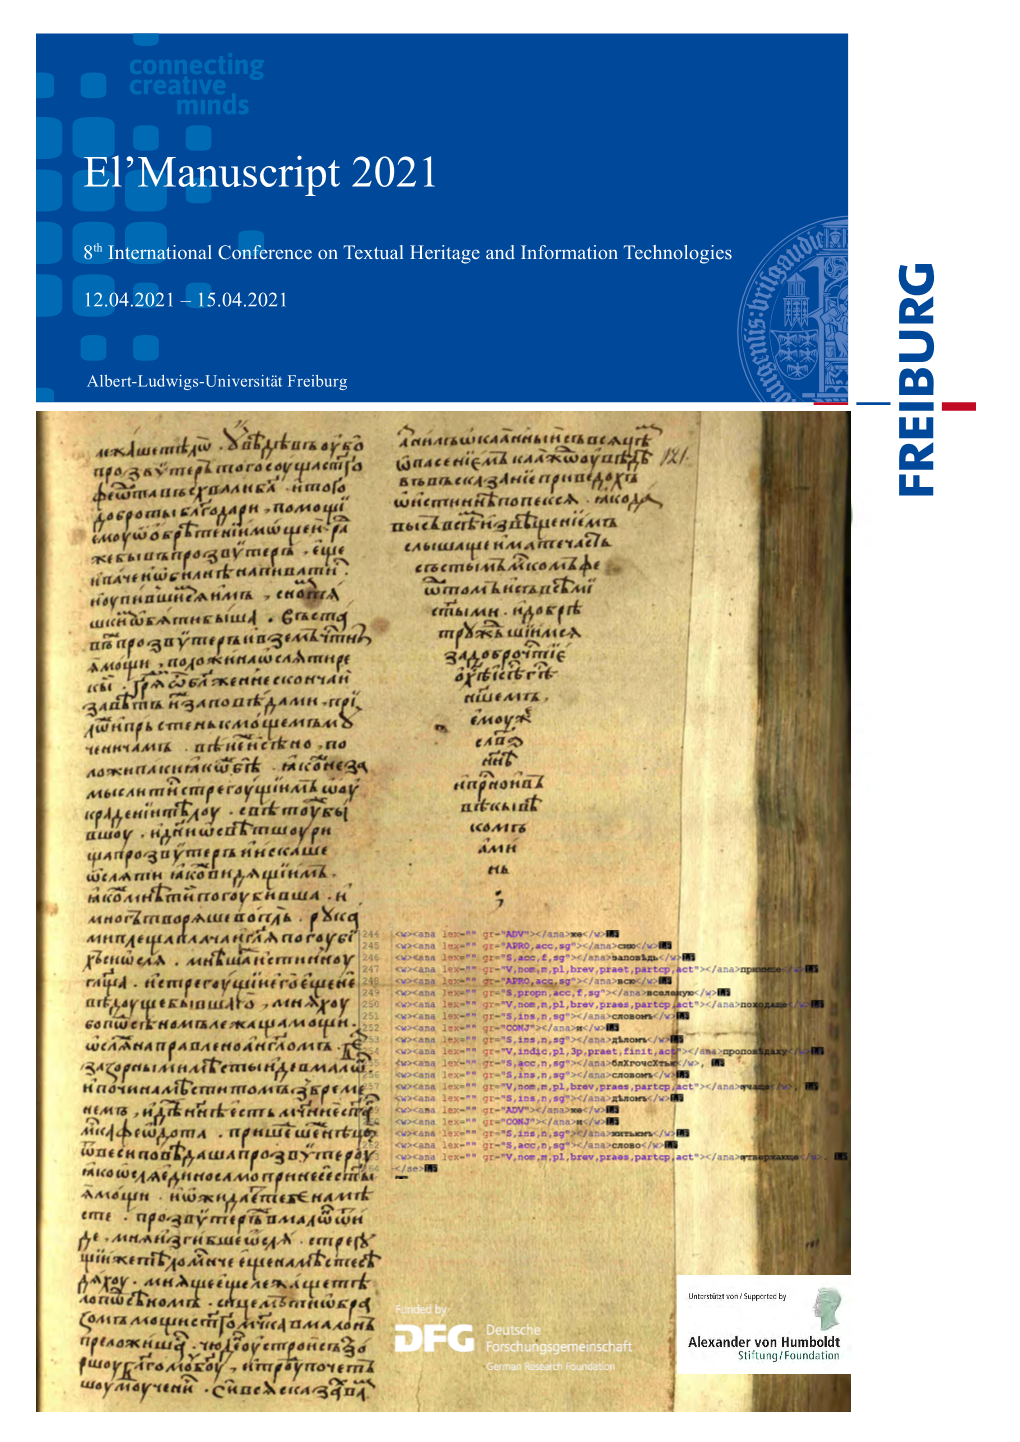 El'manuscript 2021 – Booklet of Abstracts